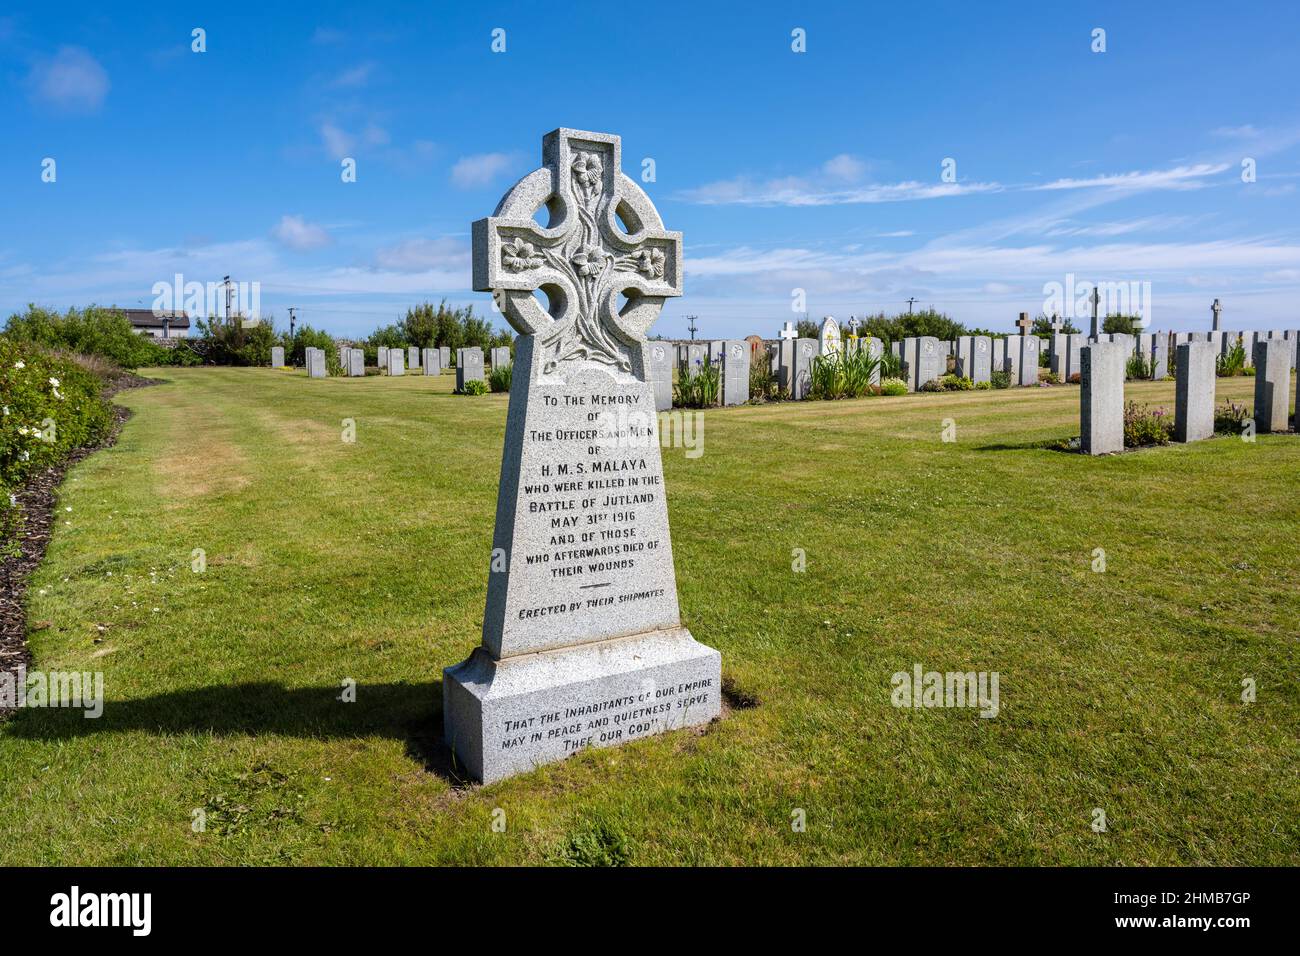 Monumento a las oficinas y hombres del HMS Malaya asesinados en la Batalla de Jutland (31st de mayo de 1916) Cementerio Naval de Lyness, Lyness, Isla de Hoy, Orkney, Escocia, REINO UNIDO Foto de stock